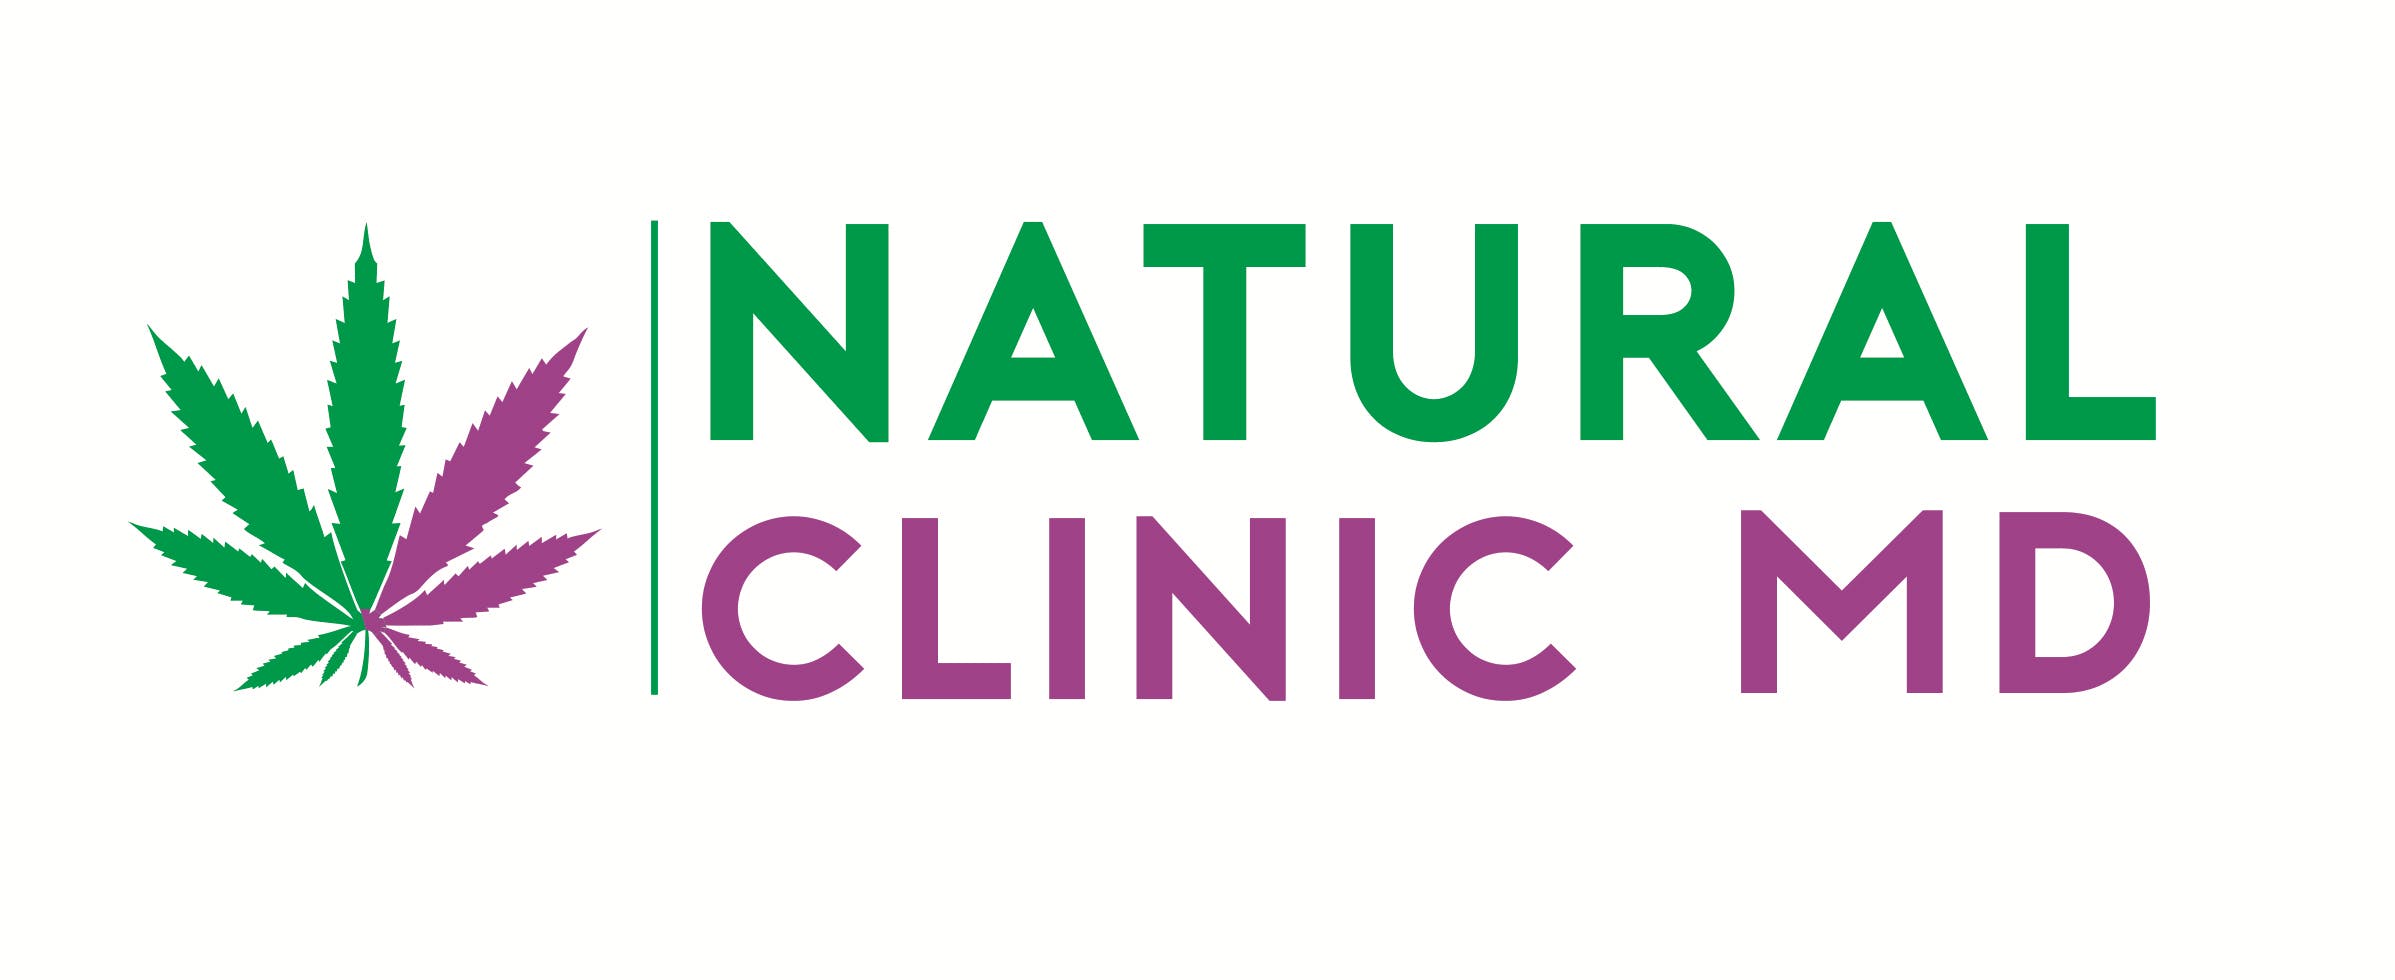 Natural Clinic MD - Medical Marijuana Doctors - Cannabizme.com